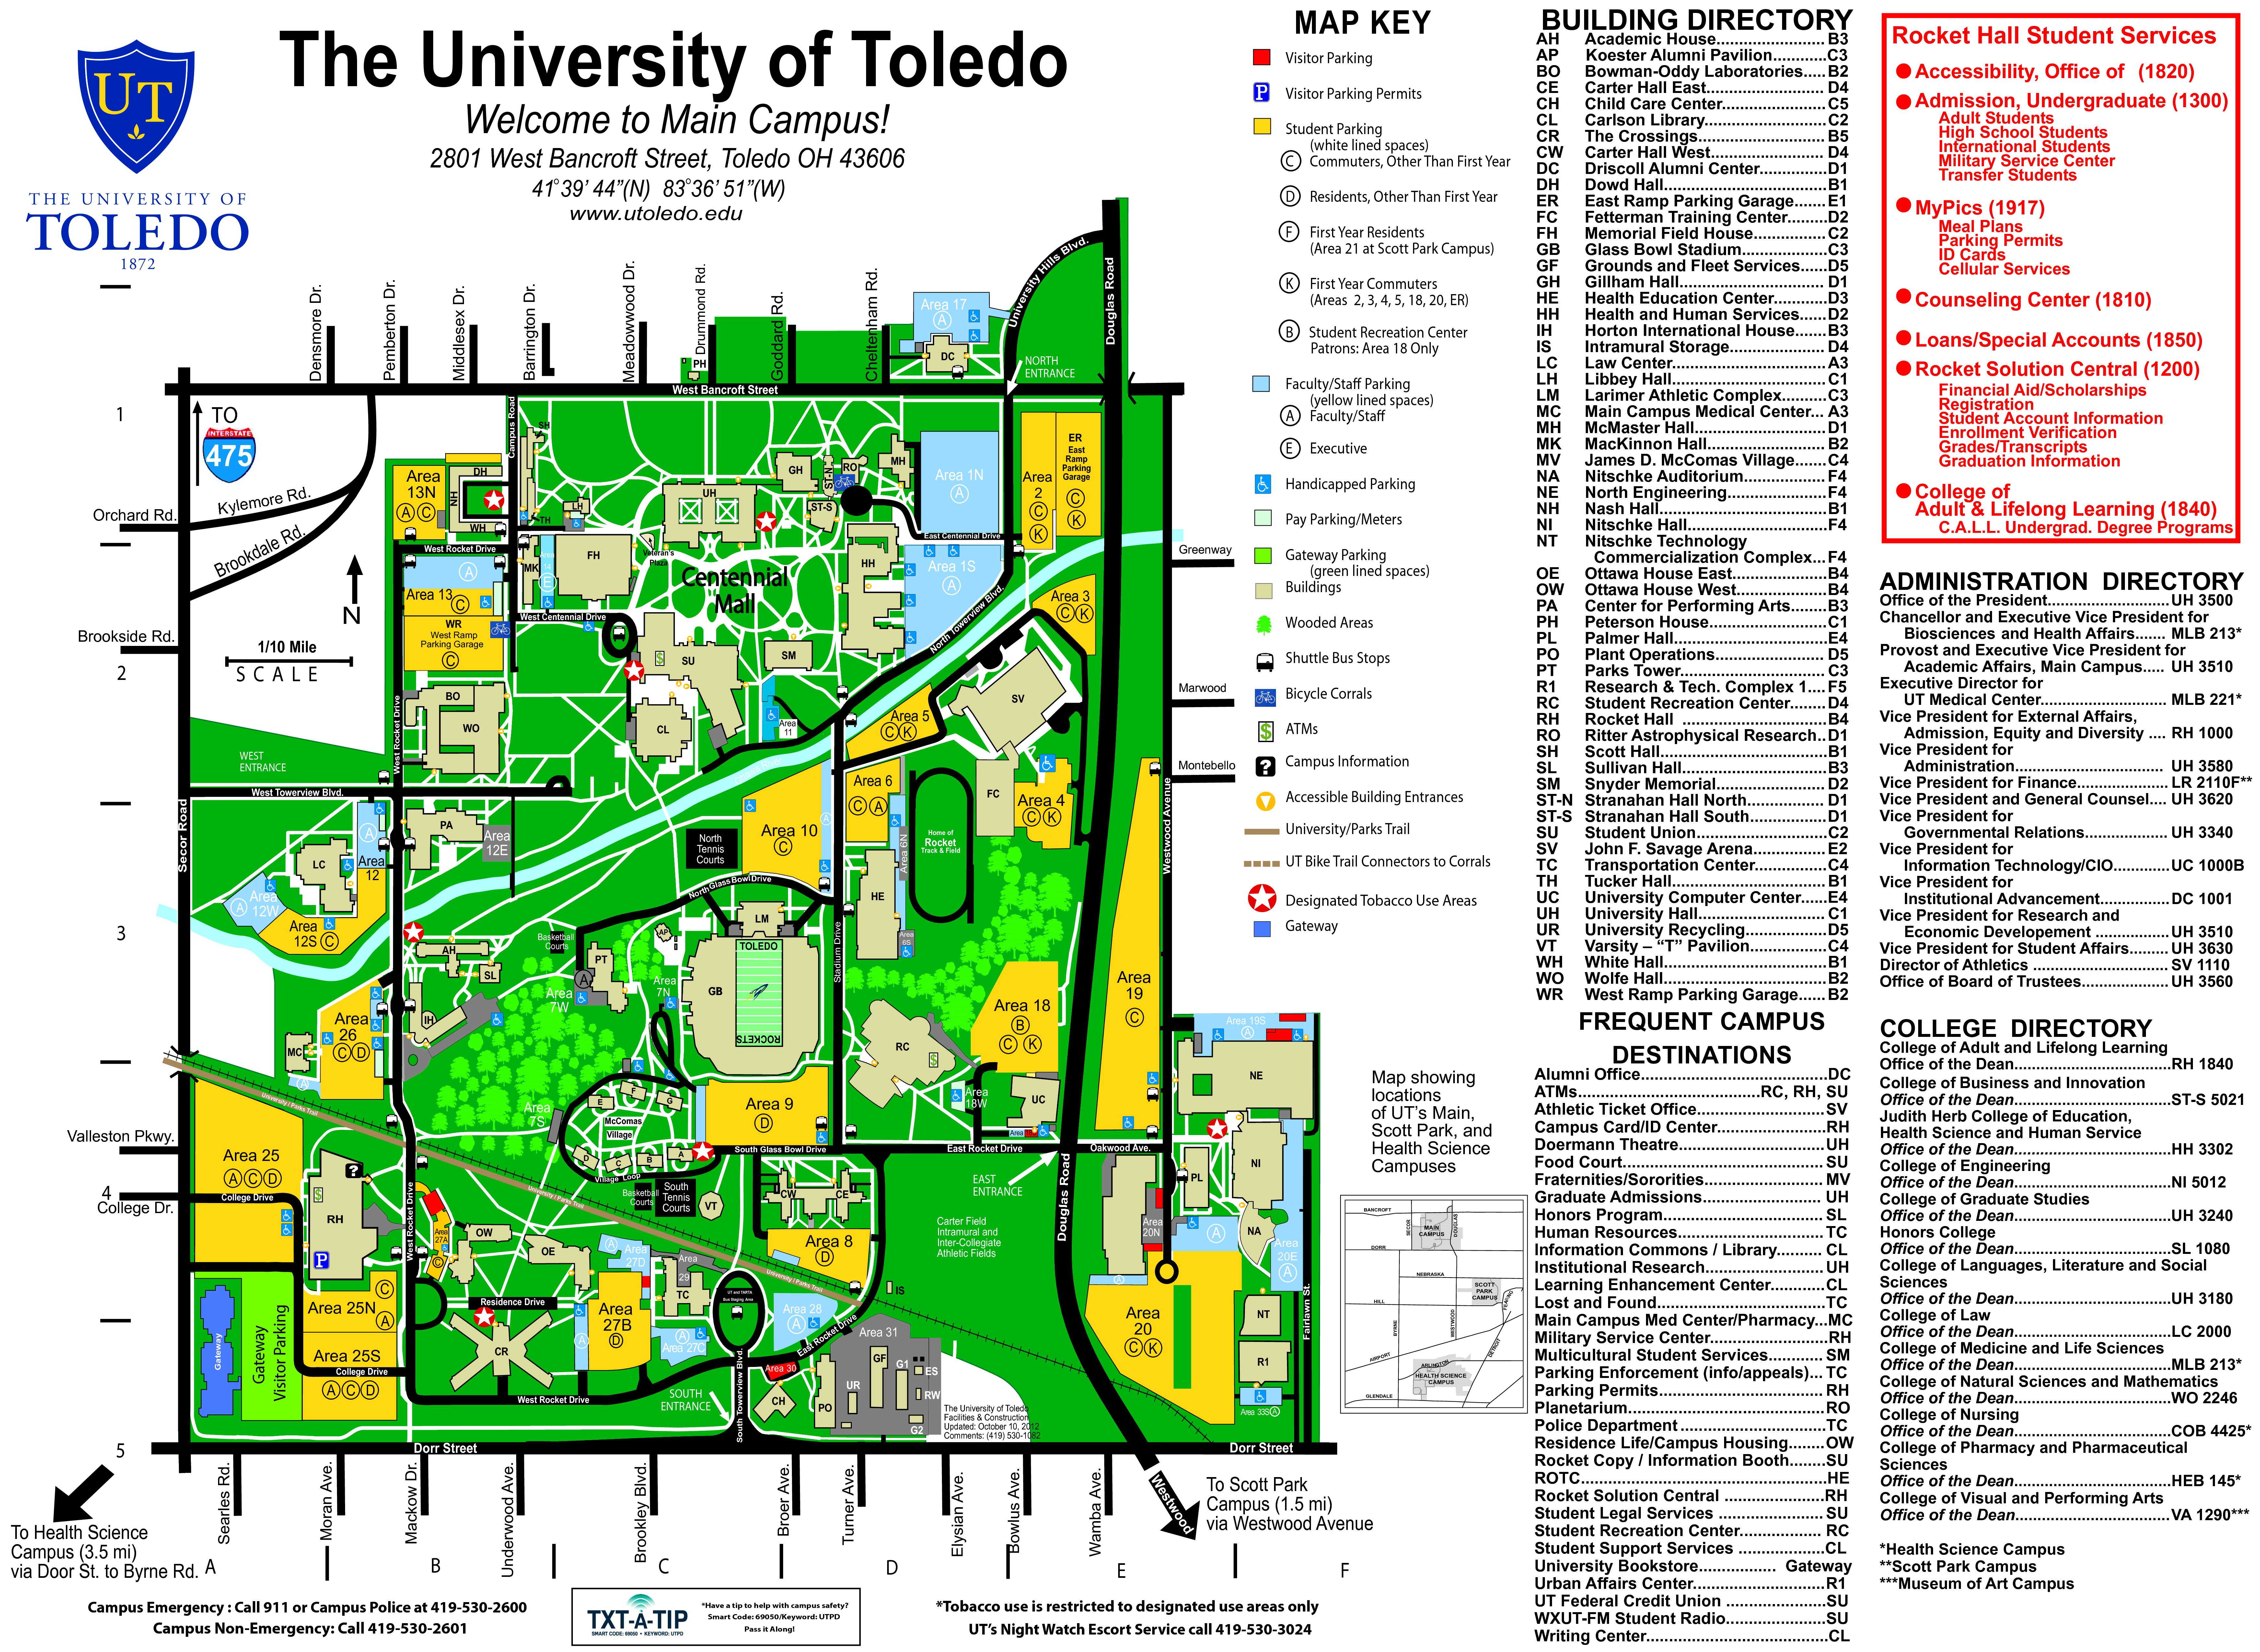 University Of Toledo Rockets Image Thecelebritypix